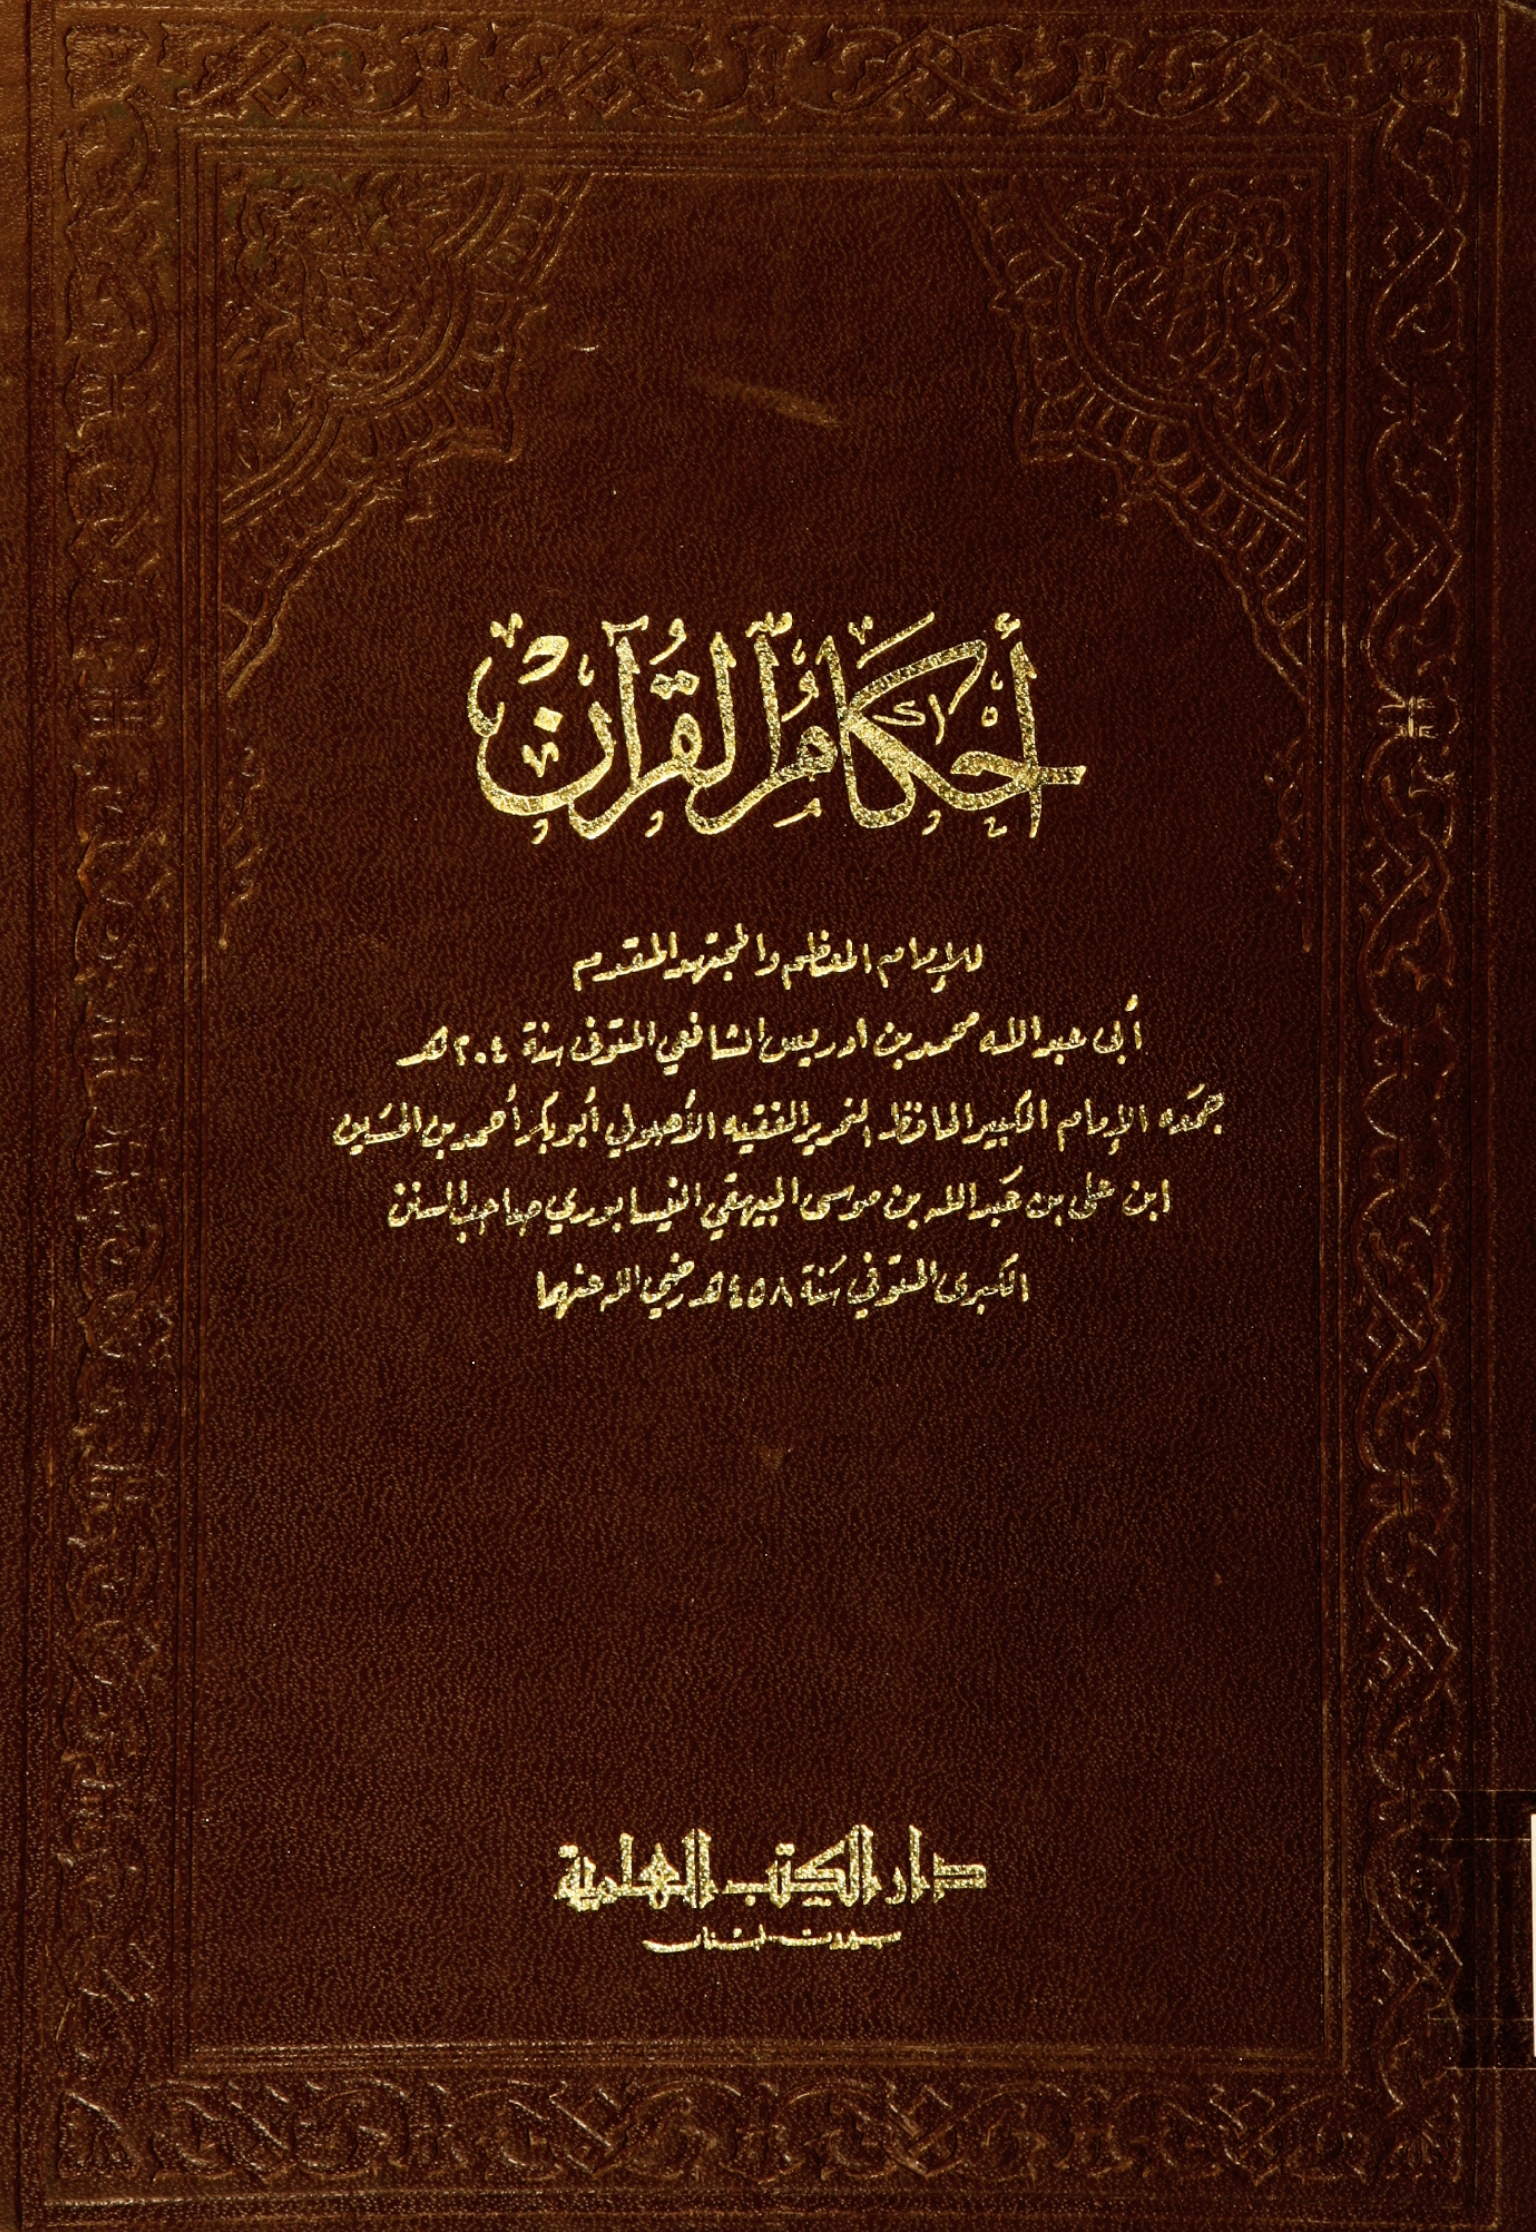 تحميل كتاب أحكام القرآن (الشافعي) لـِ: الإمام أبو عبد الله محمد بن إدريس المطلبي الشافعي (ت 204)